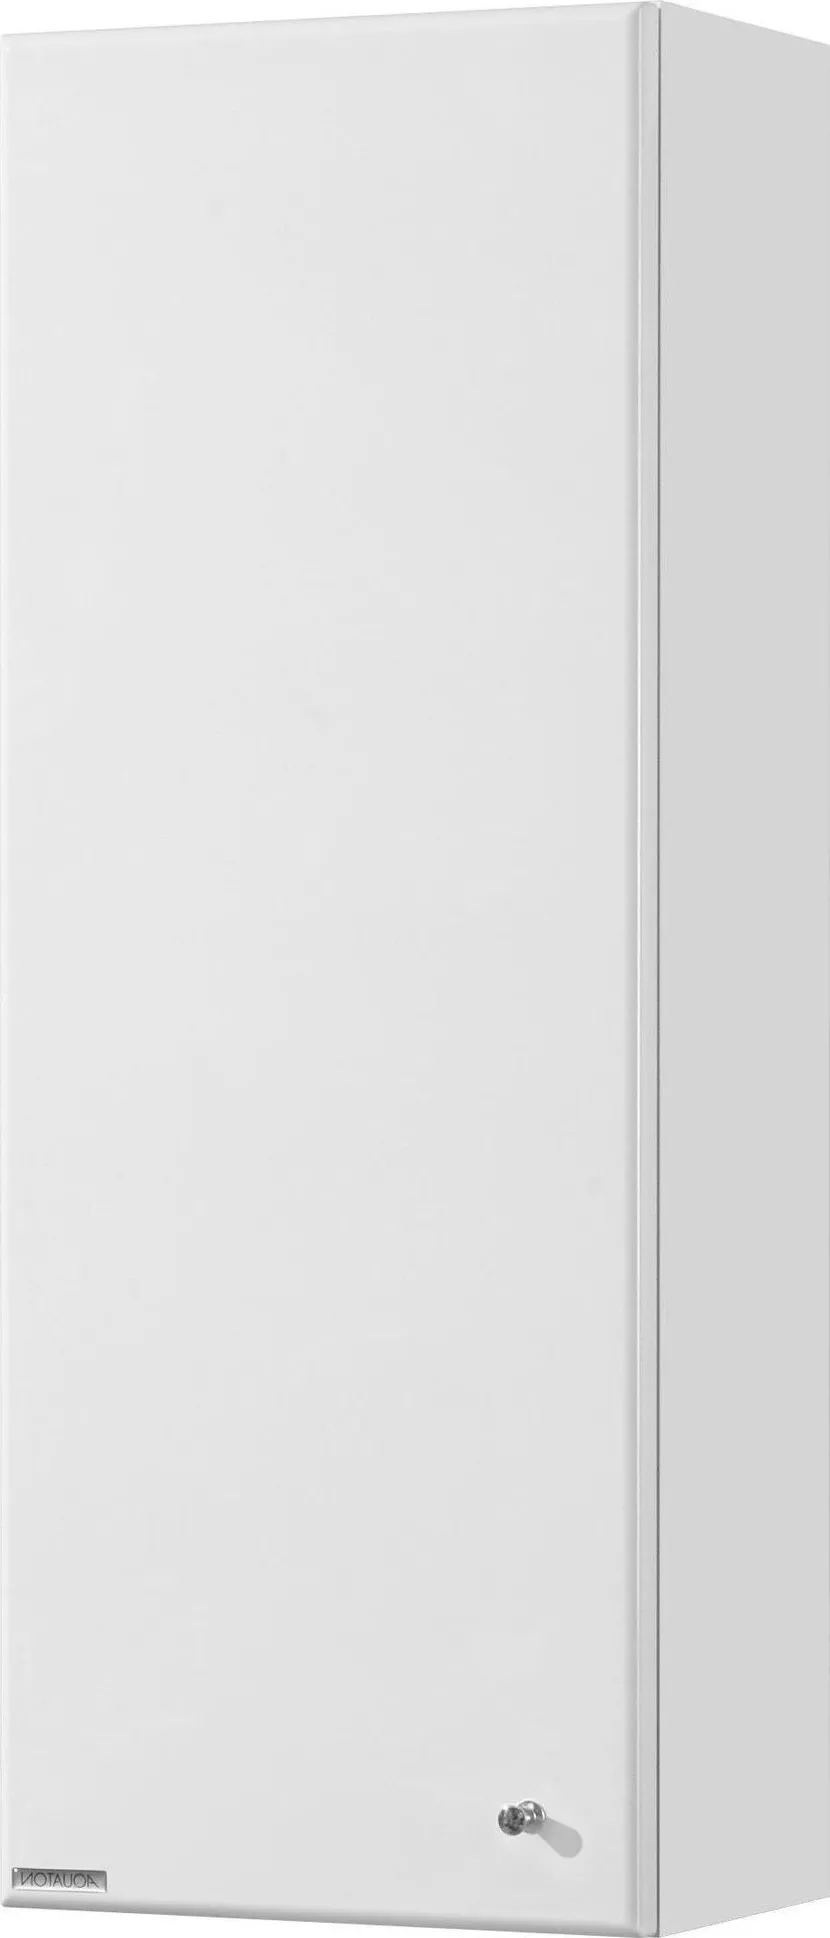 Шкаф-пенал Акватон Симпл 31x82 см белый 1A012503SL01L левый